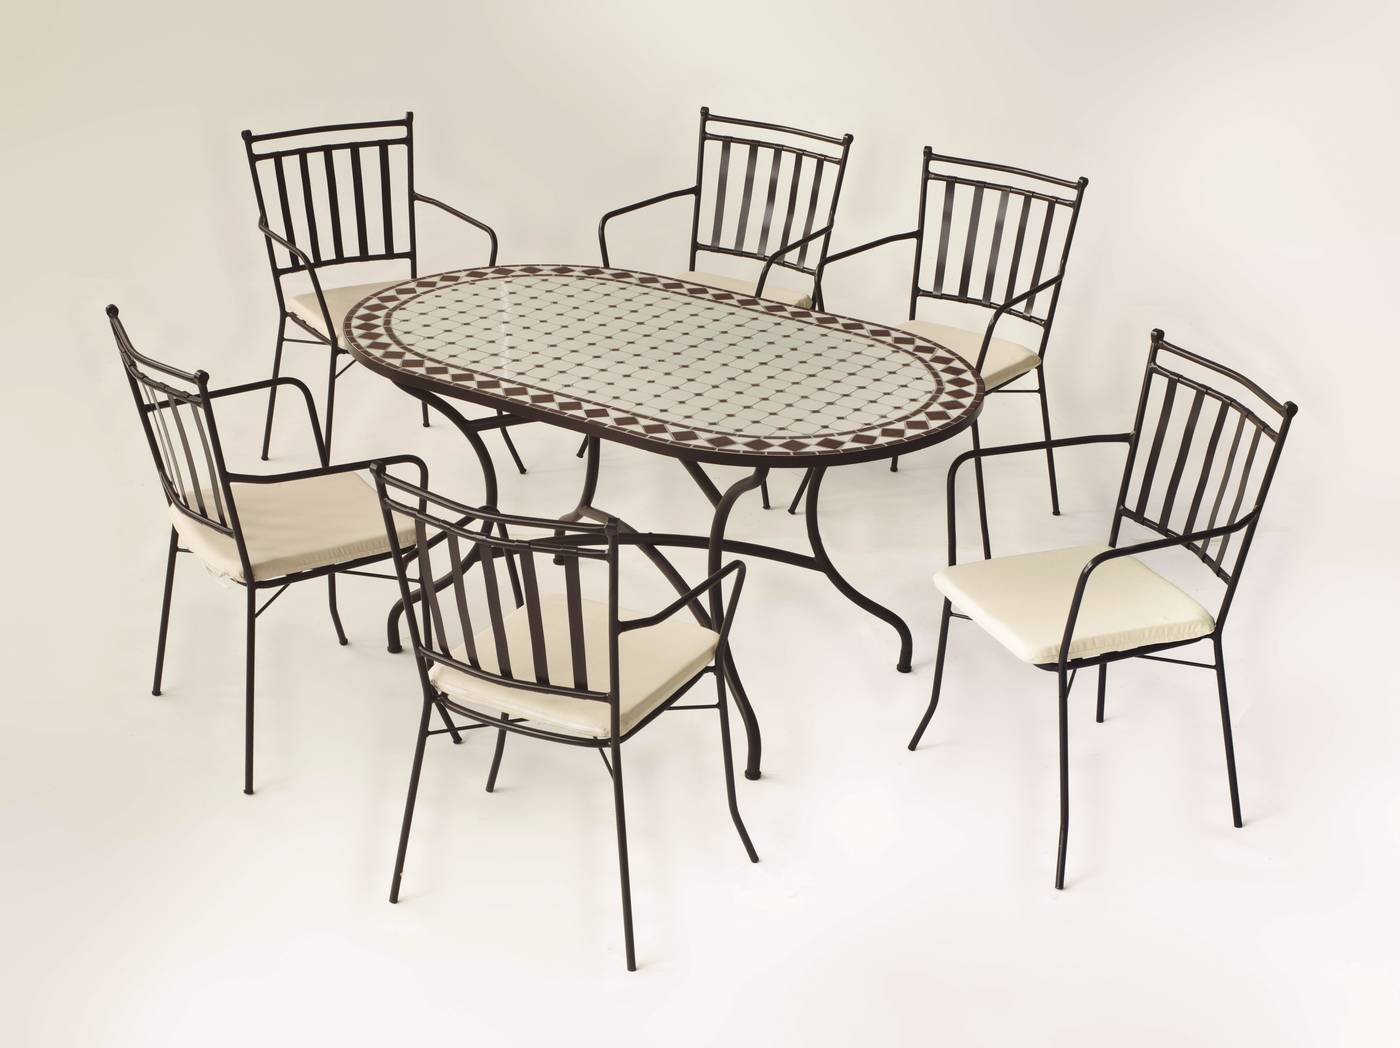 Conjunto de forja color bronce: mesa con tablero mosaico de 150 cm + 6 sillones con cojines asiento.